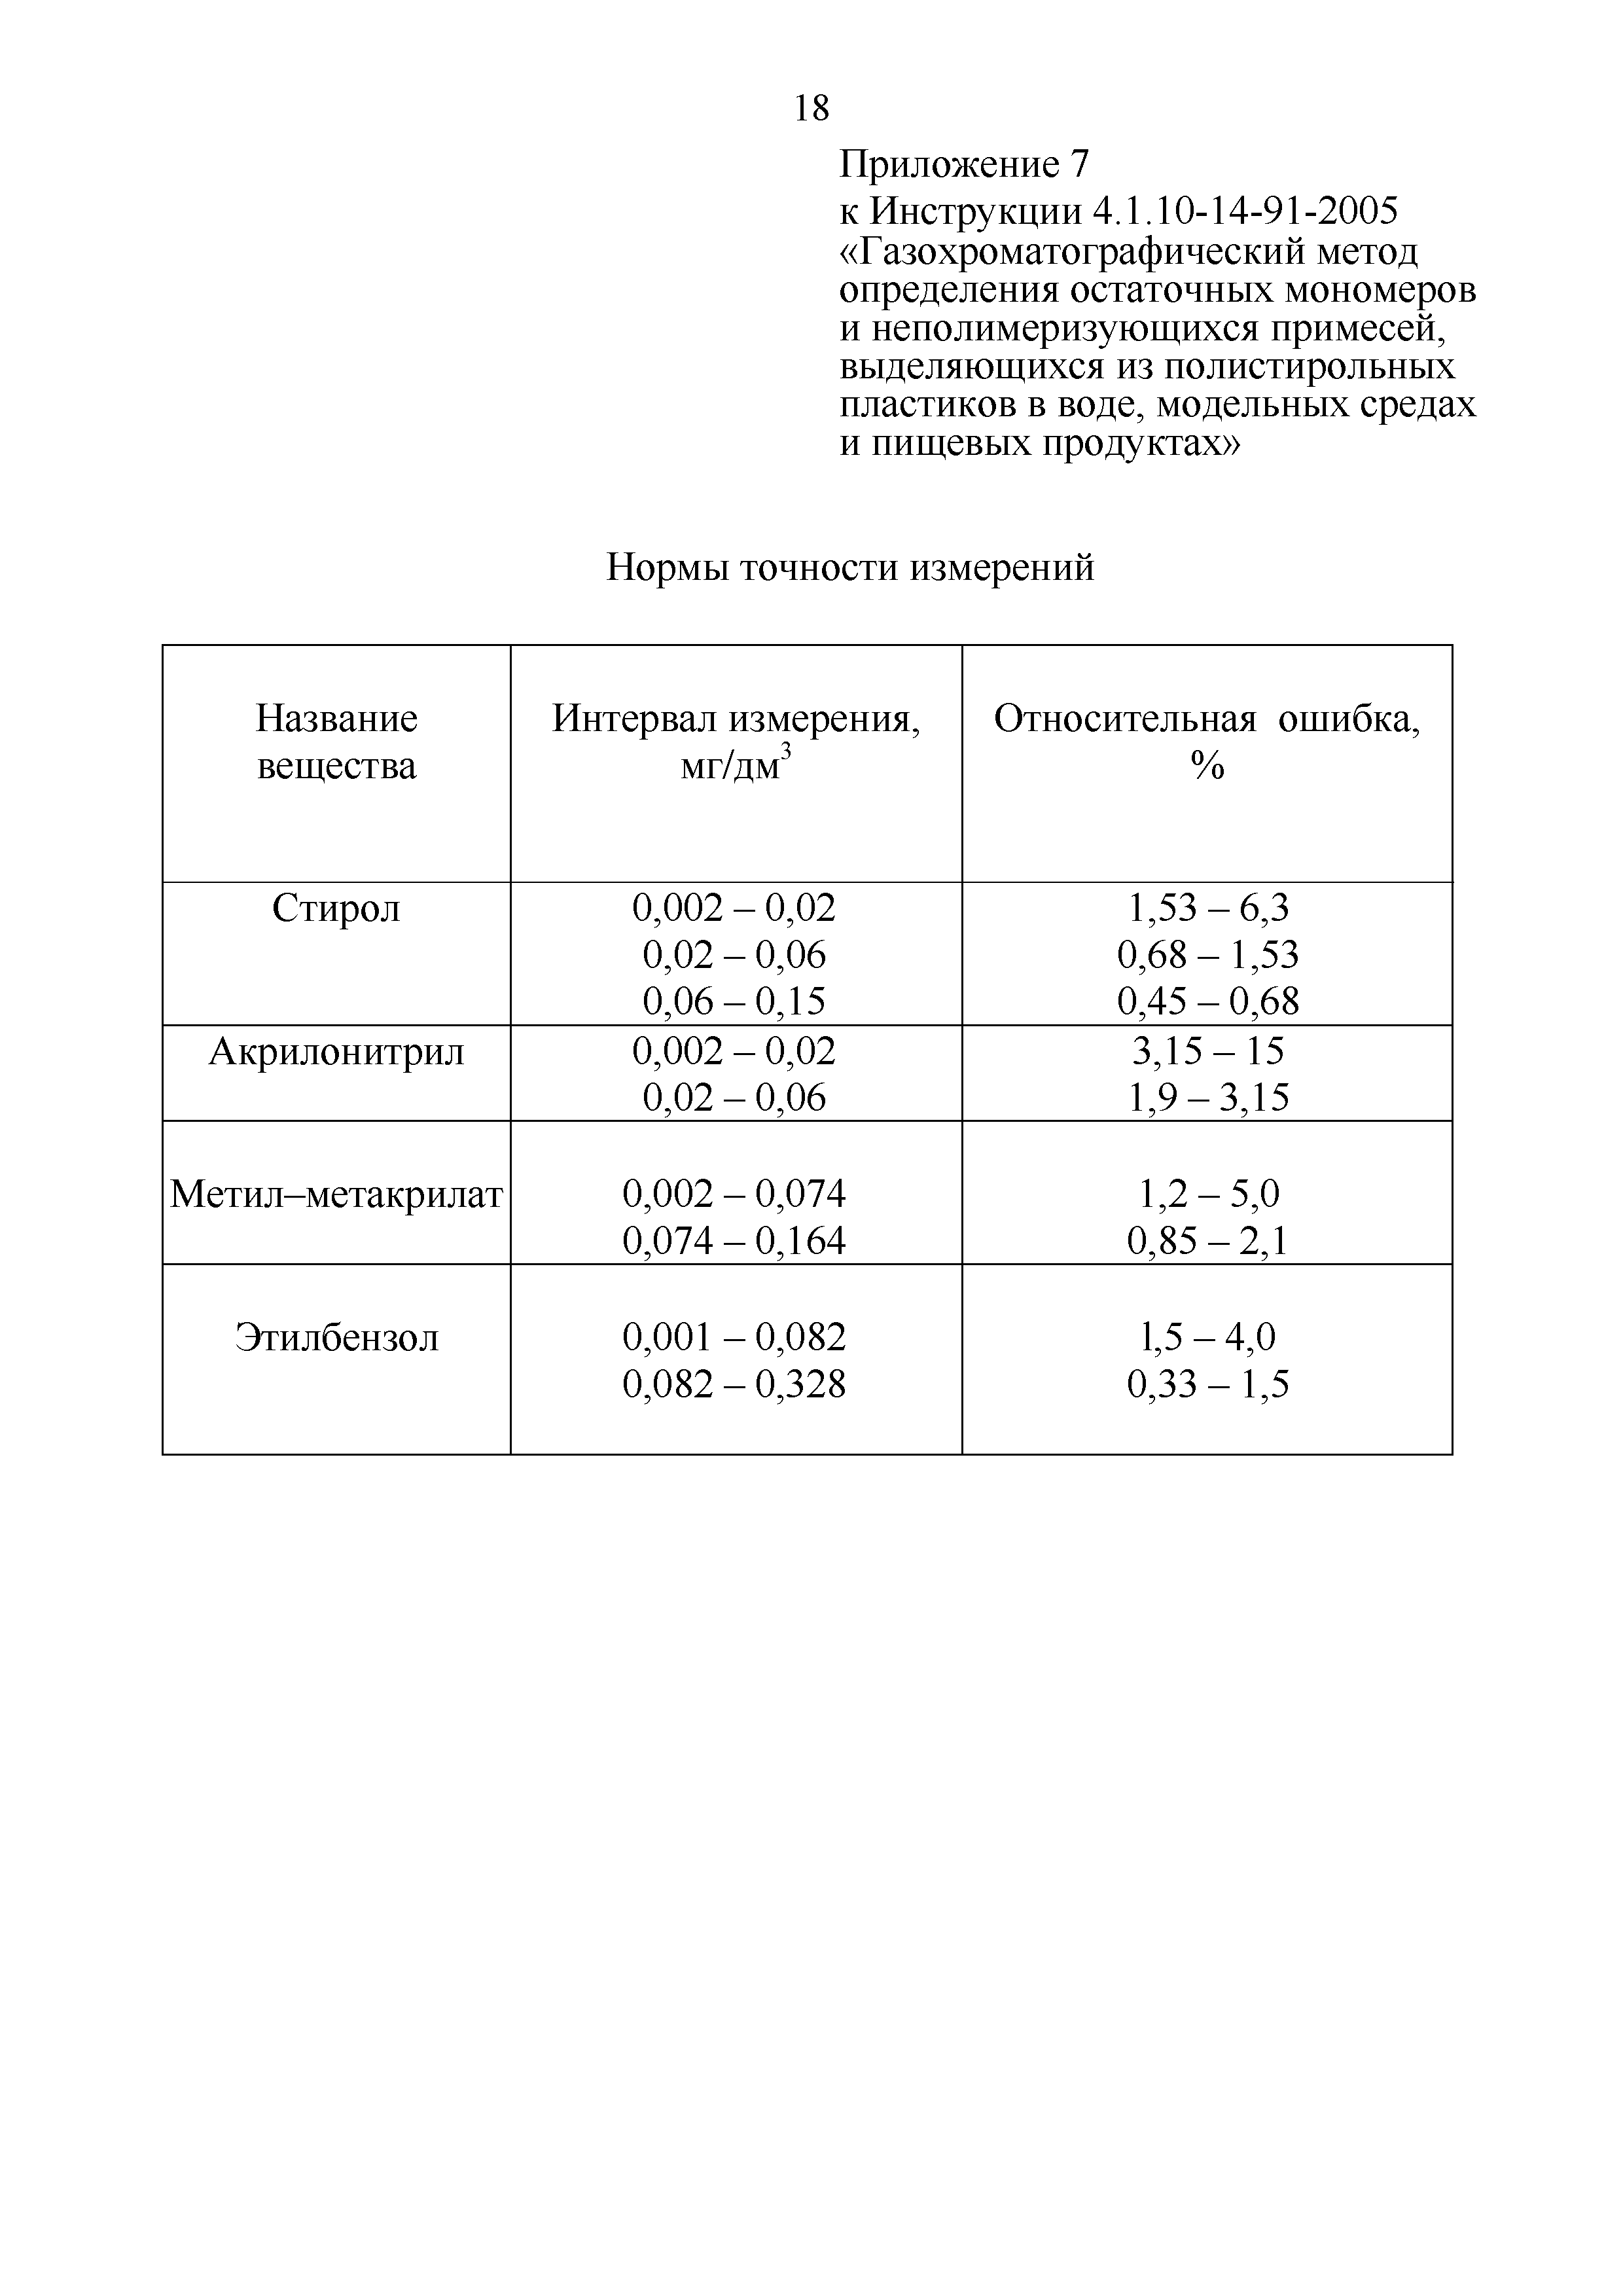 Инструкция 4.1.10-14-91-2005